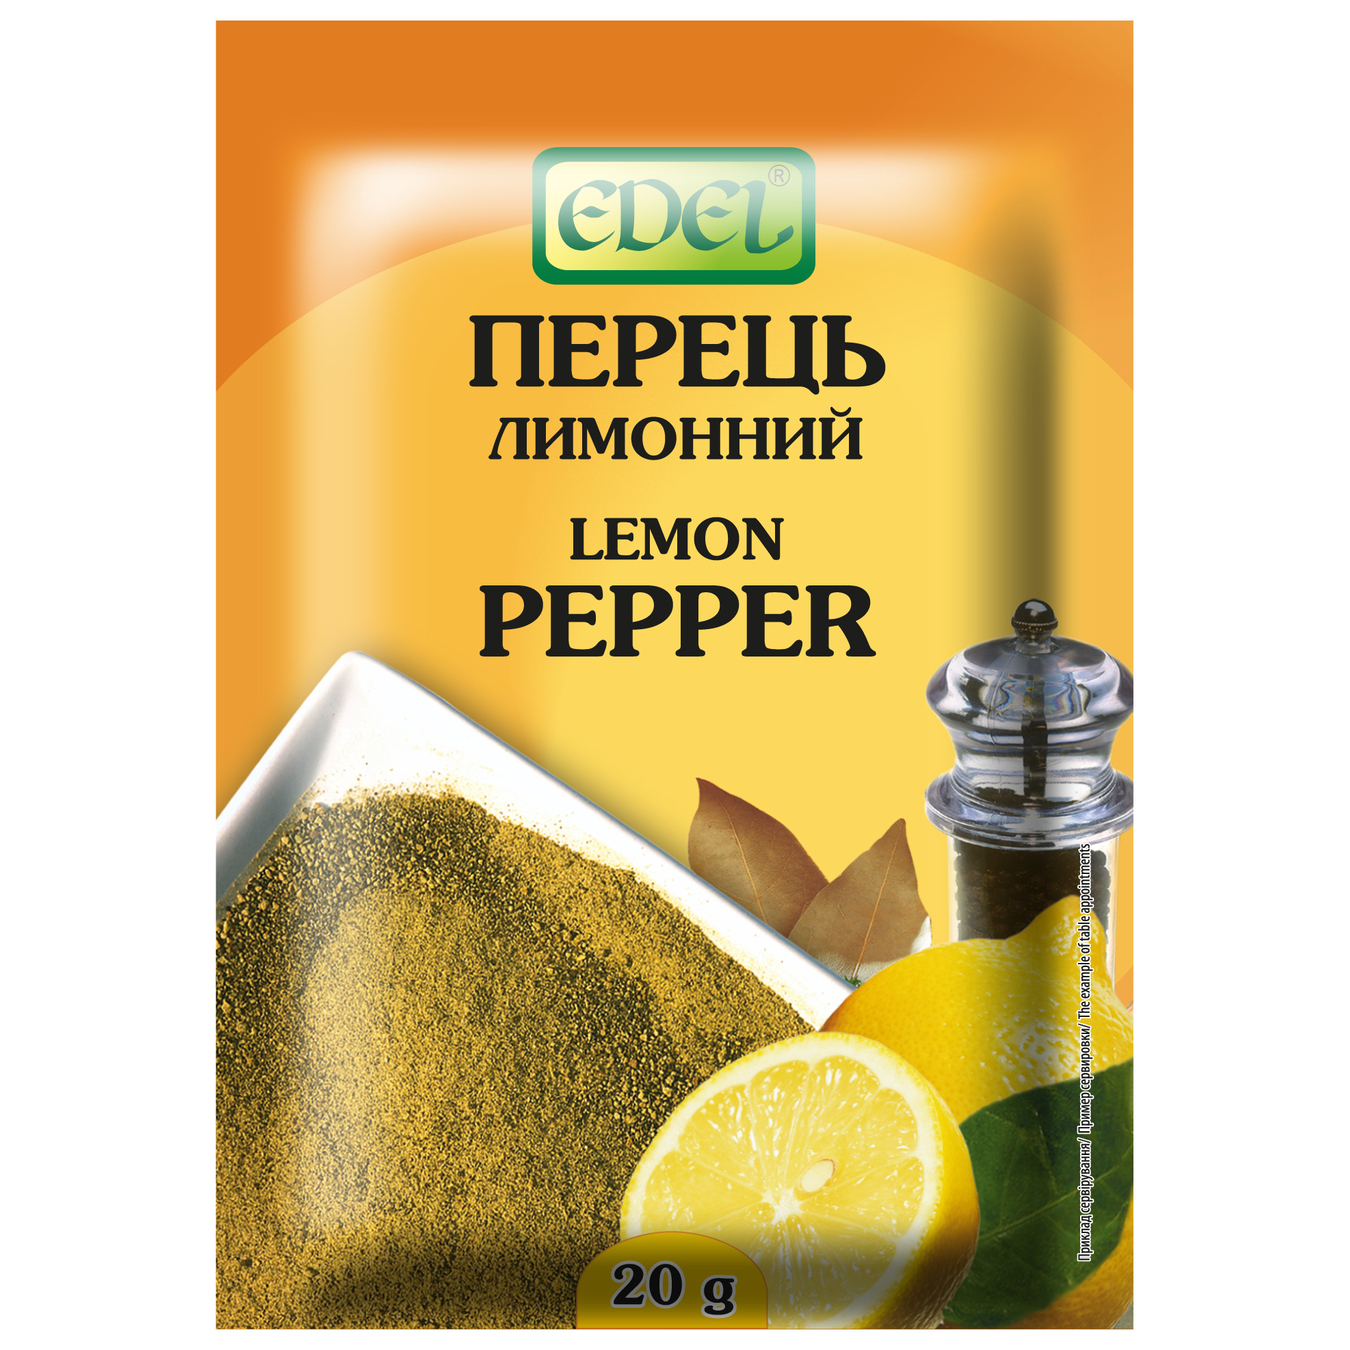 EDEL Lemon Pepper 20g